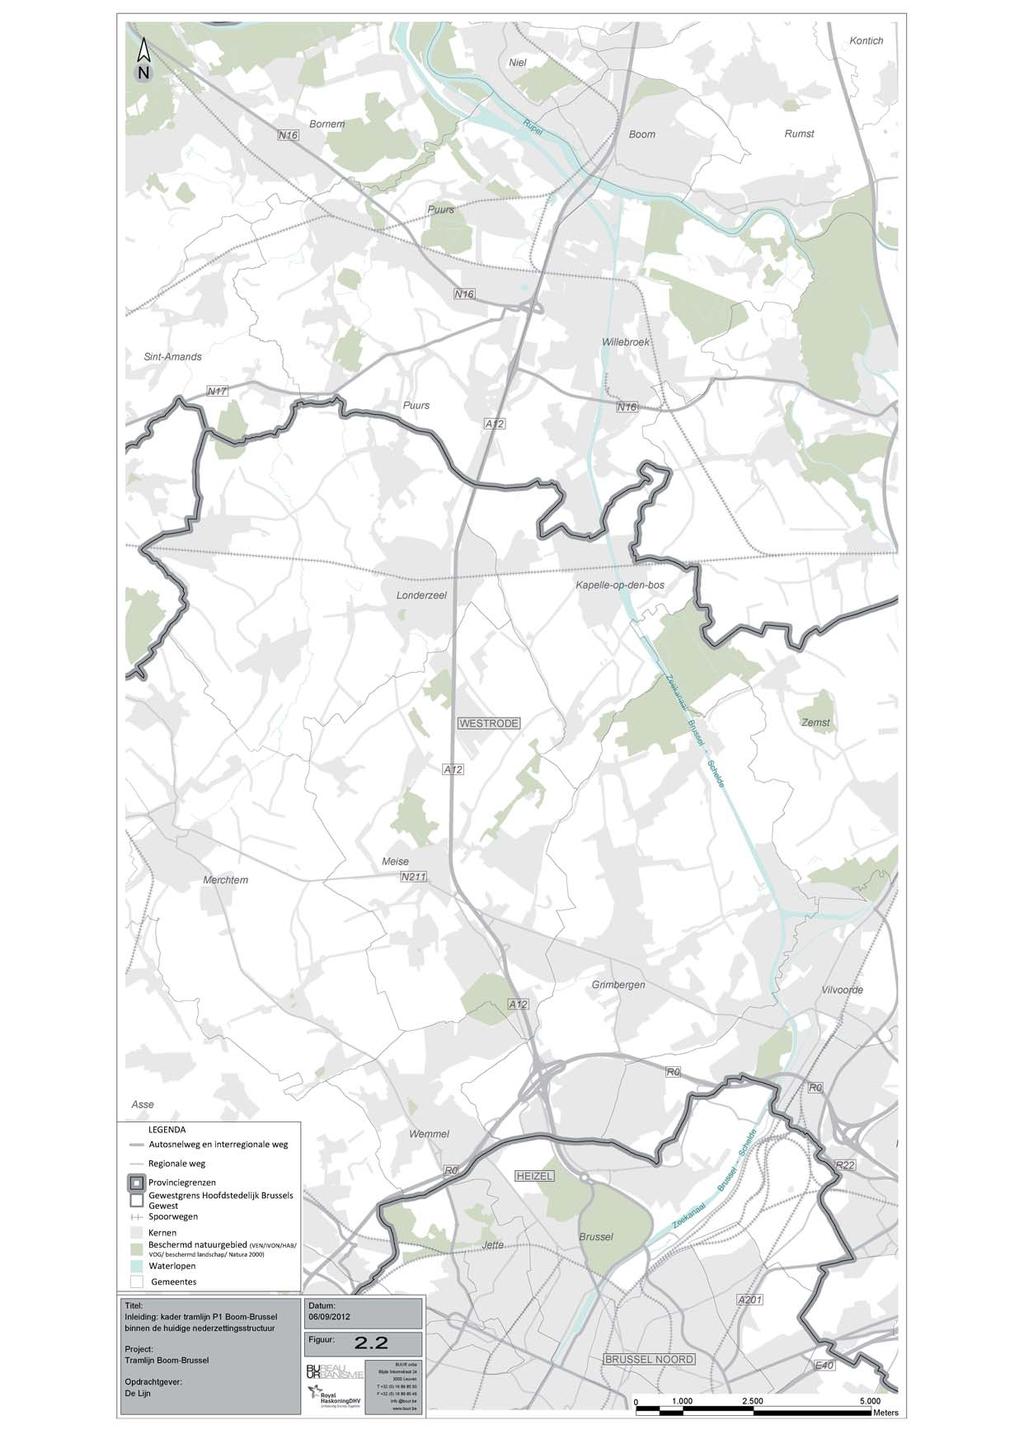 LEGENDA Provinciegrenzen Autosnelweg en interregionale weg Regionale weg Gewestgrens Brussels Hoofdstedelijk Gewest Spoorwegen Kernen Beschermd natuurgebied (VEN/IVON/HAB/VOG/ beschermd